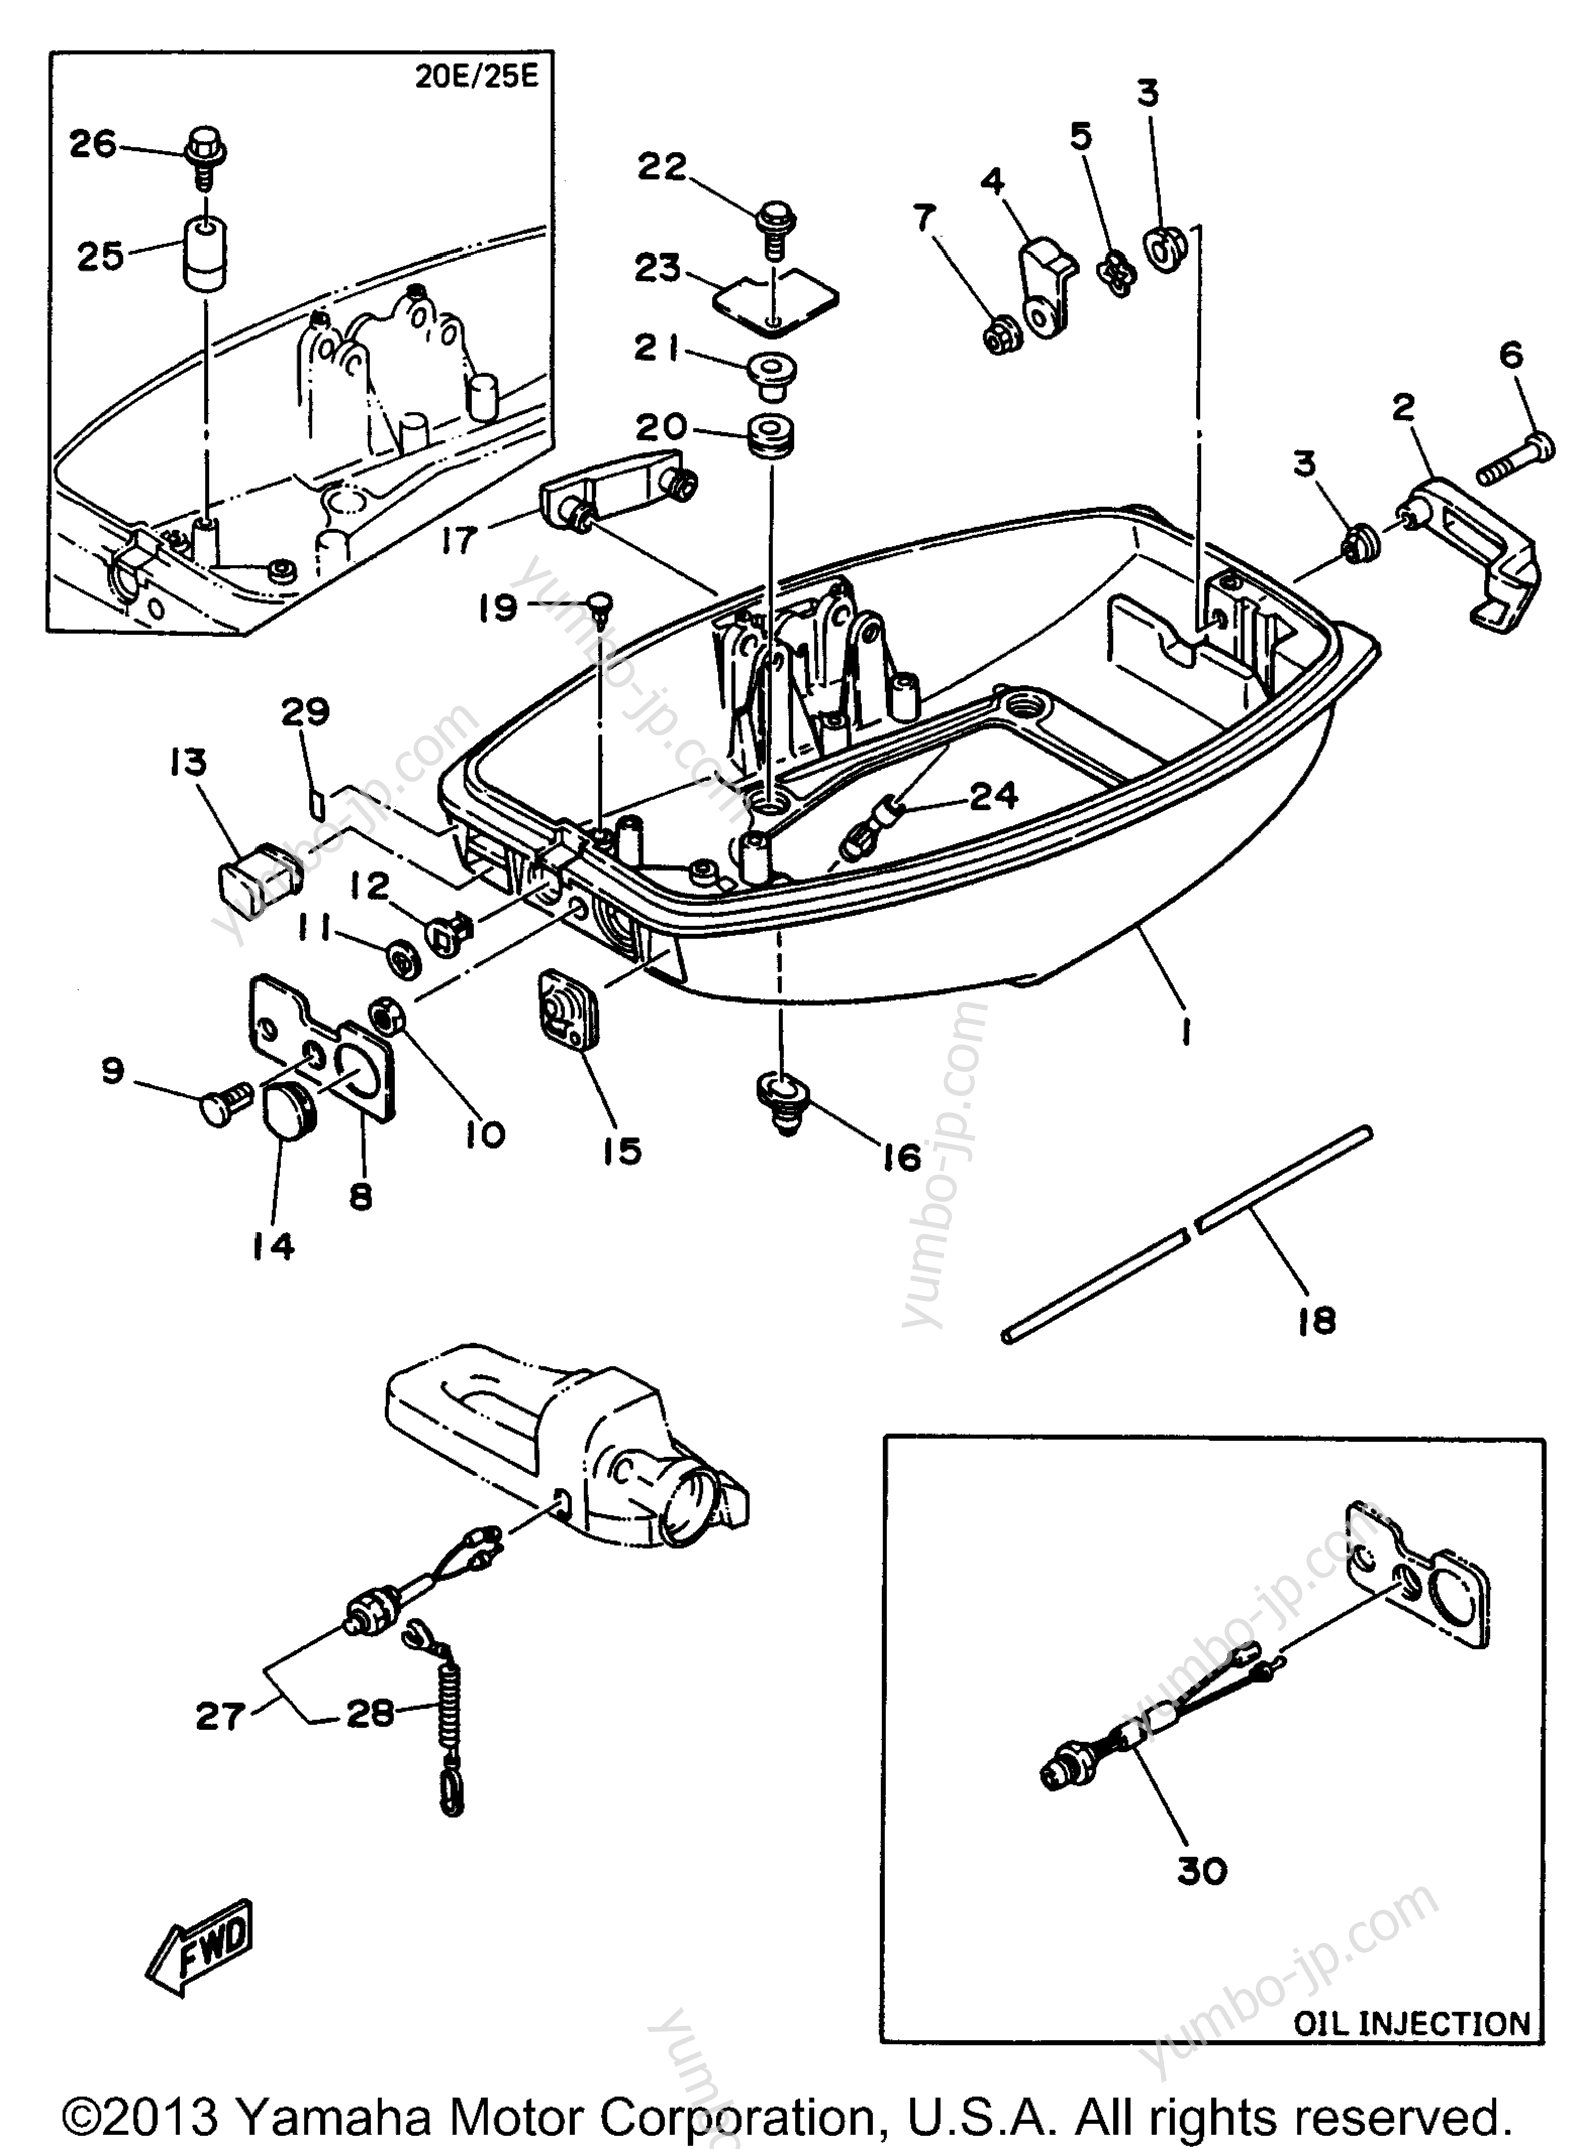 Bottom Cowling для лодочных моторов YAMAHA 25MSHU 1996 г.